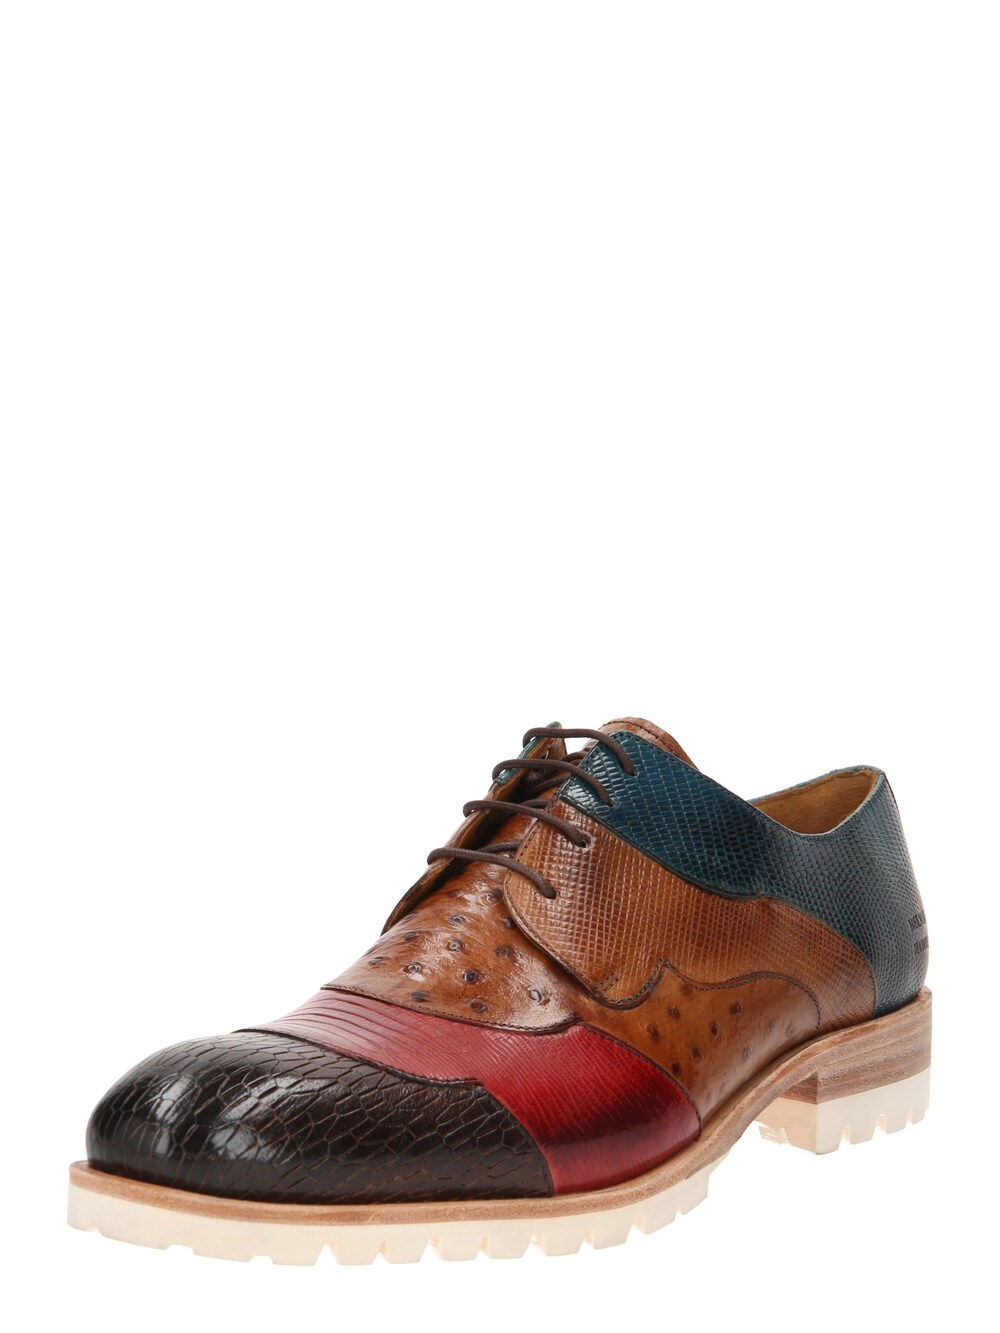 Обувь на шнуровке MELVIN & HAMILTON Patrick, смешанные цвета hamilton patrick hangover square